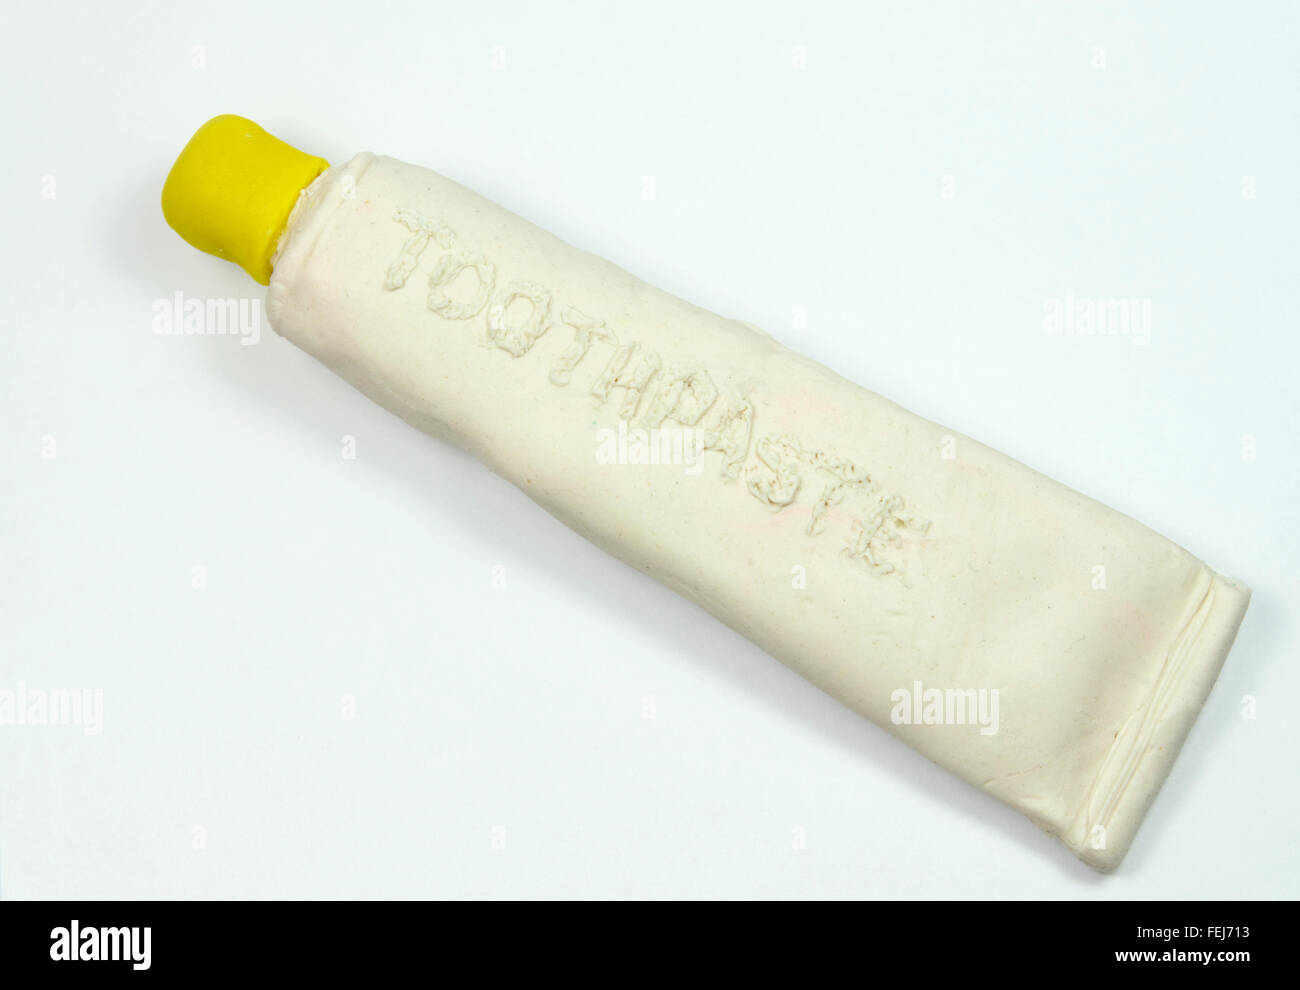 Tubo de dentífrico imitación de play doh. Foto de stock